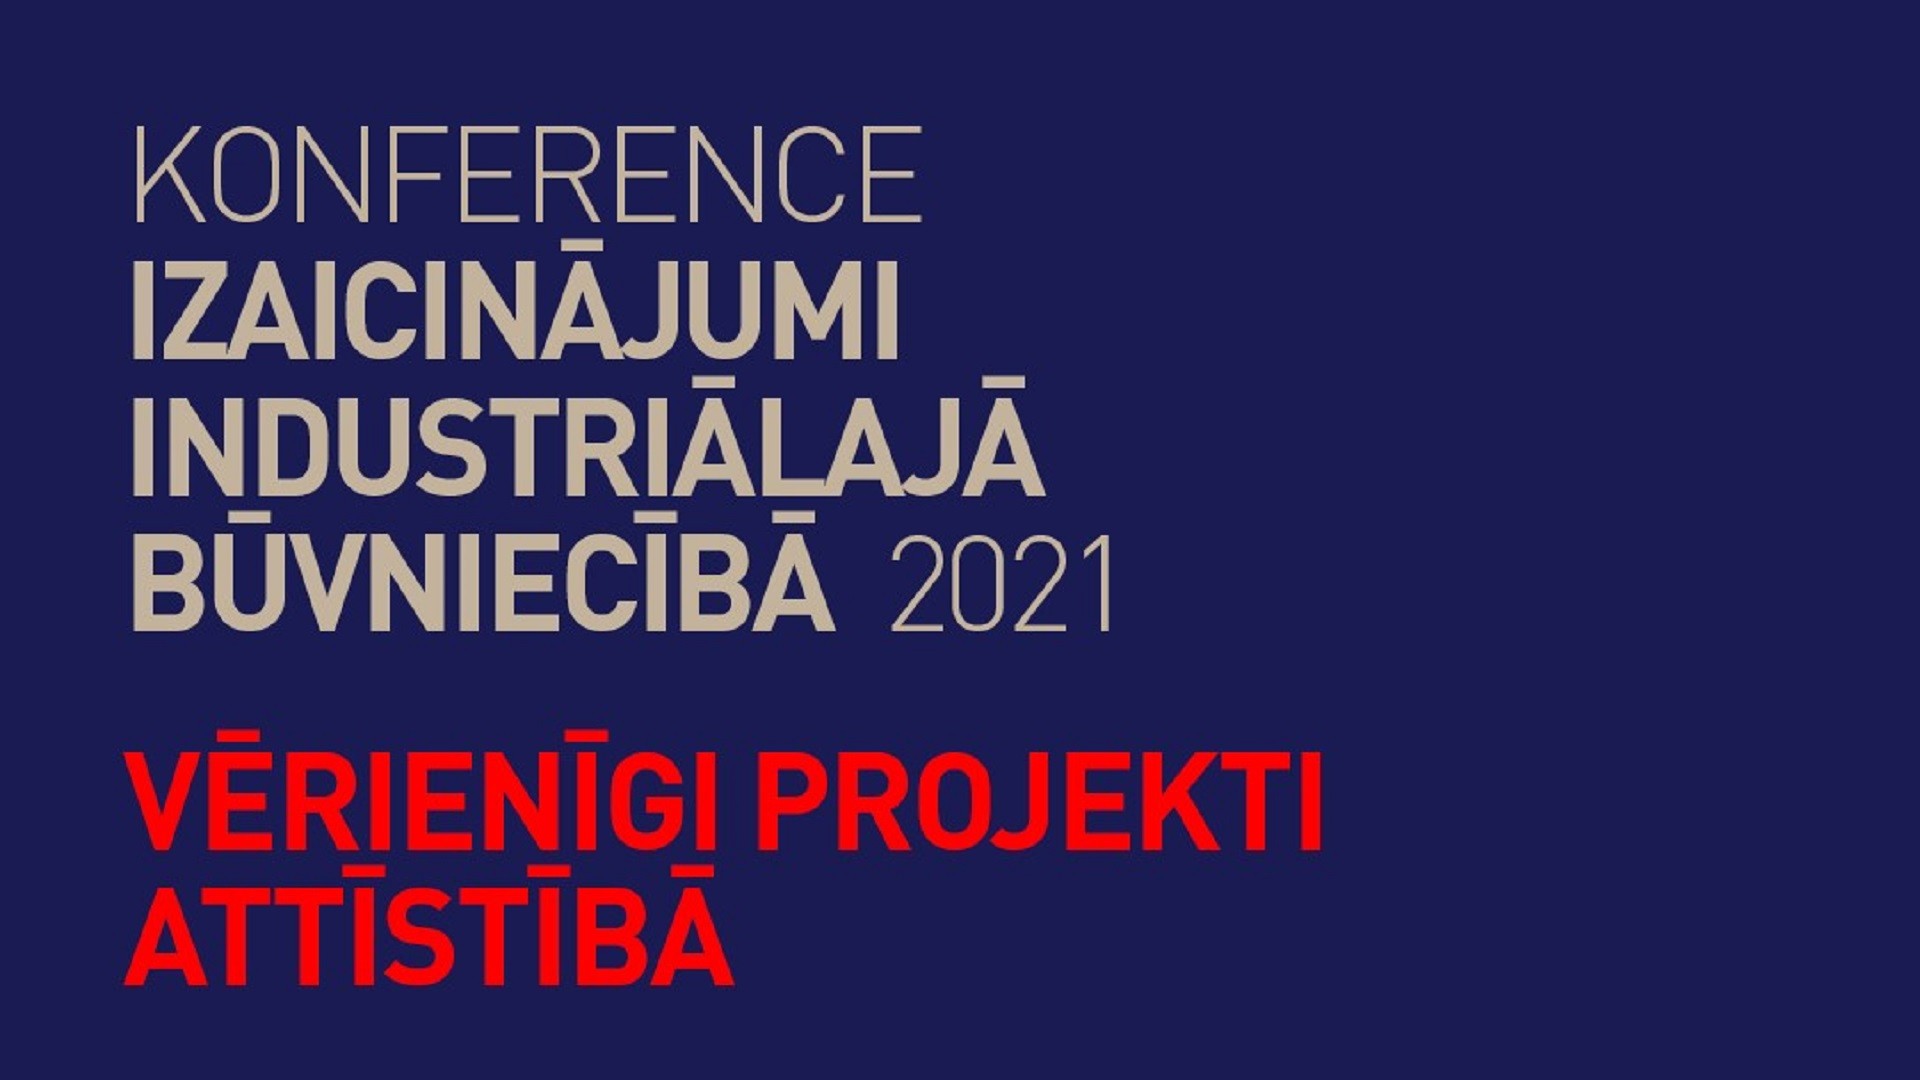 Konference «Izaicinājumi industriālajā būvniecībā 2021»